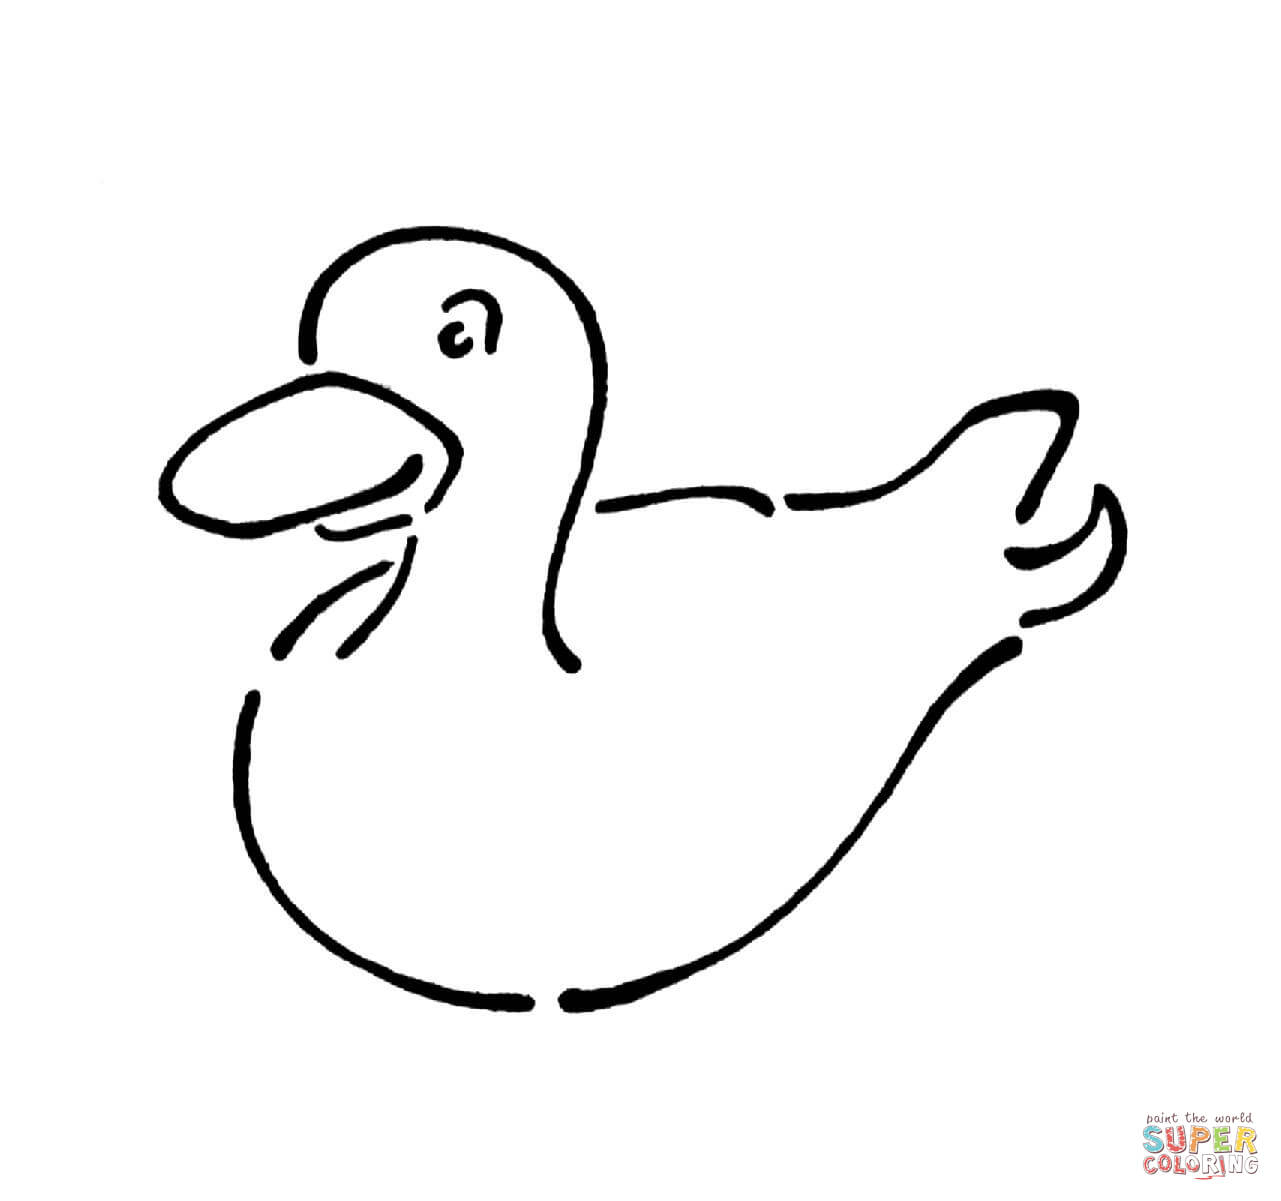 Ausmalbild: Gummi-Ente | Ausmalbilder Kostenlos Zum Ausdrucken für Ente Ausmalbild